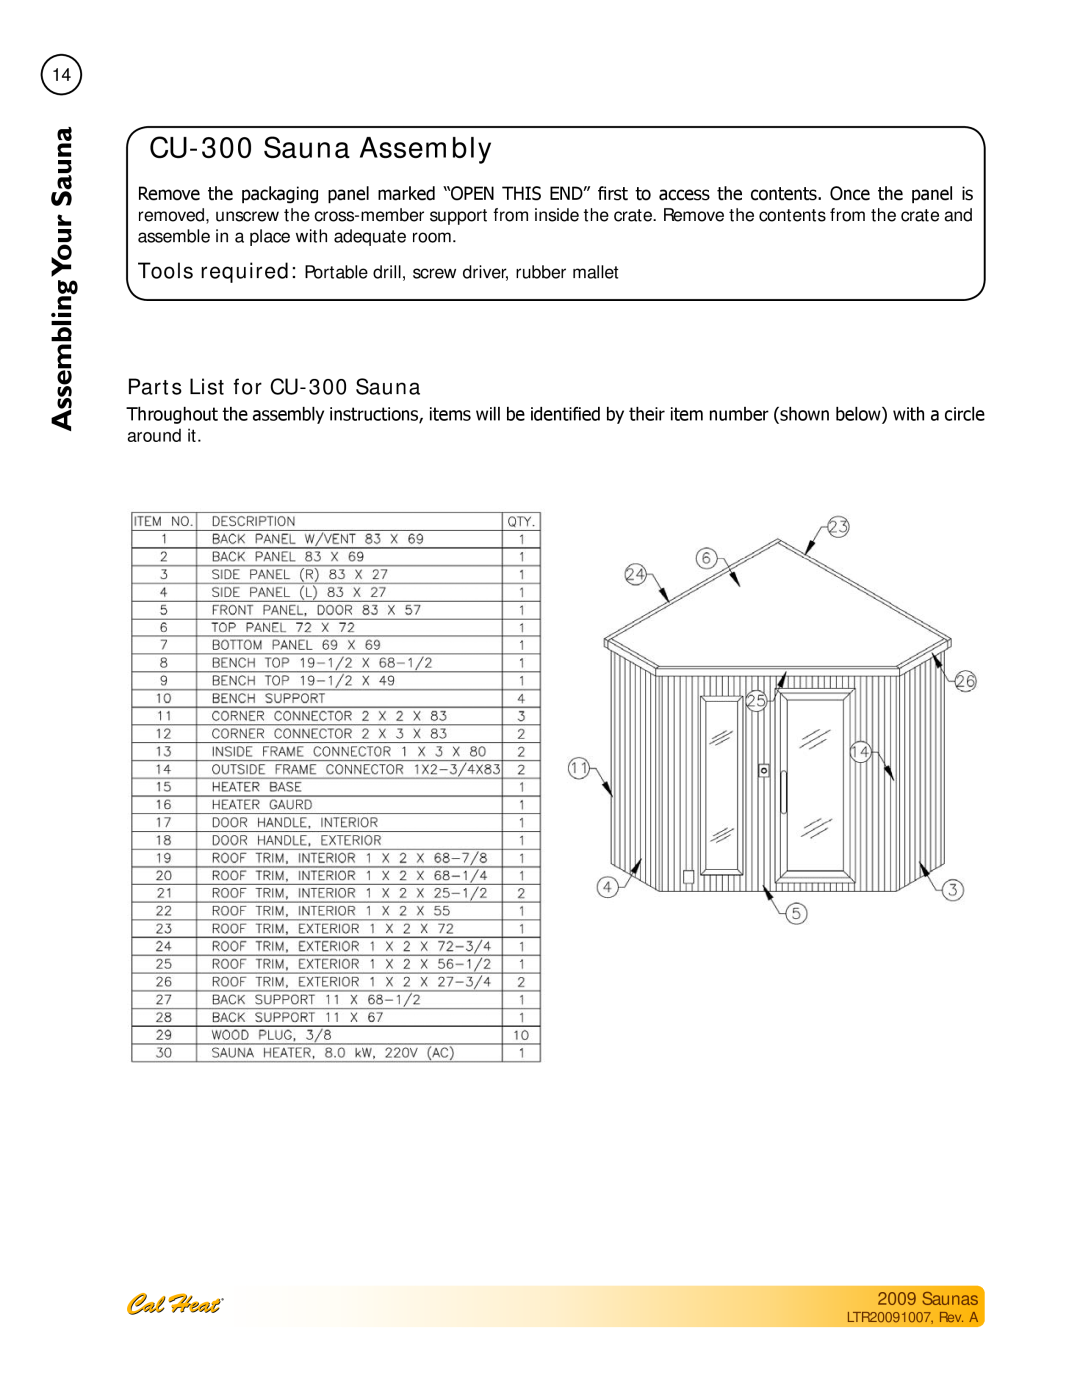 Cal Spas Saunas manual CU-300Sauna Assembly, Parts List for CU-300Sauna, Assembling SaunaYour 